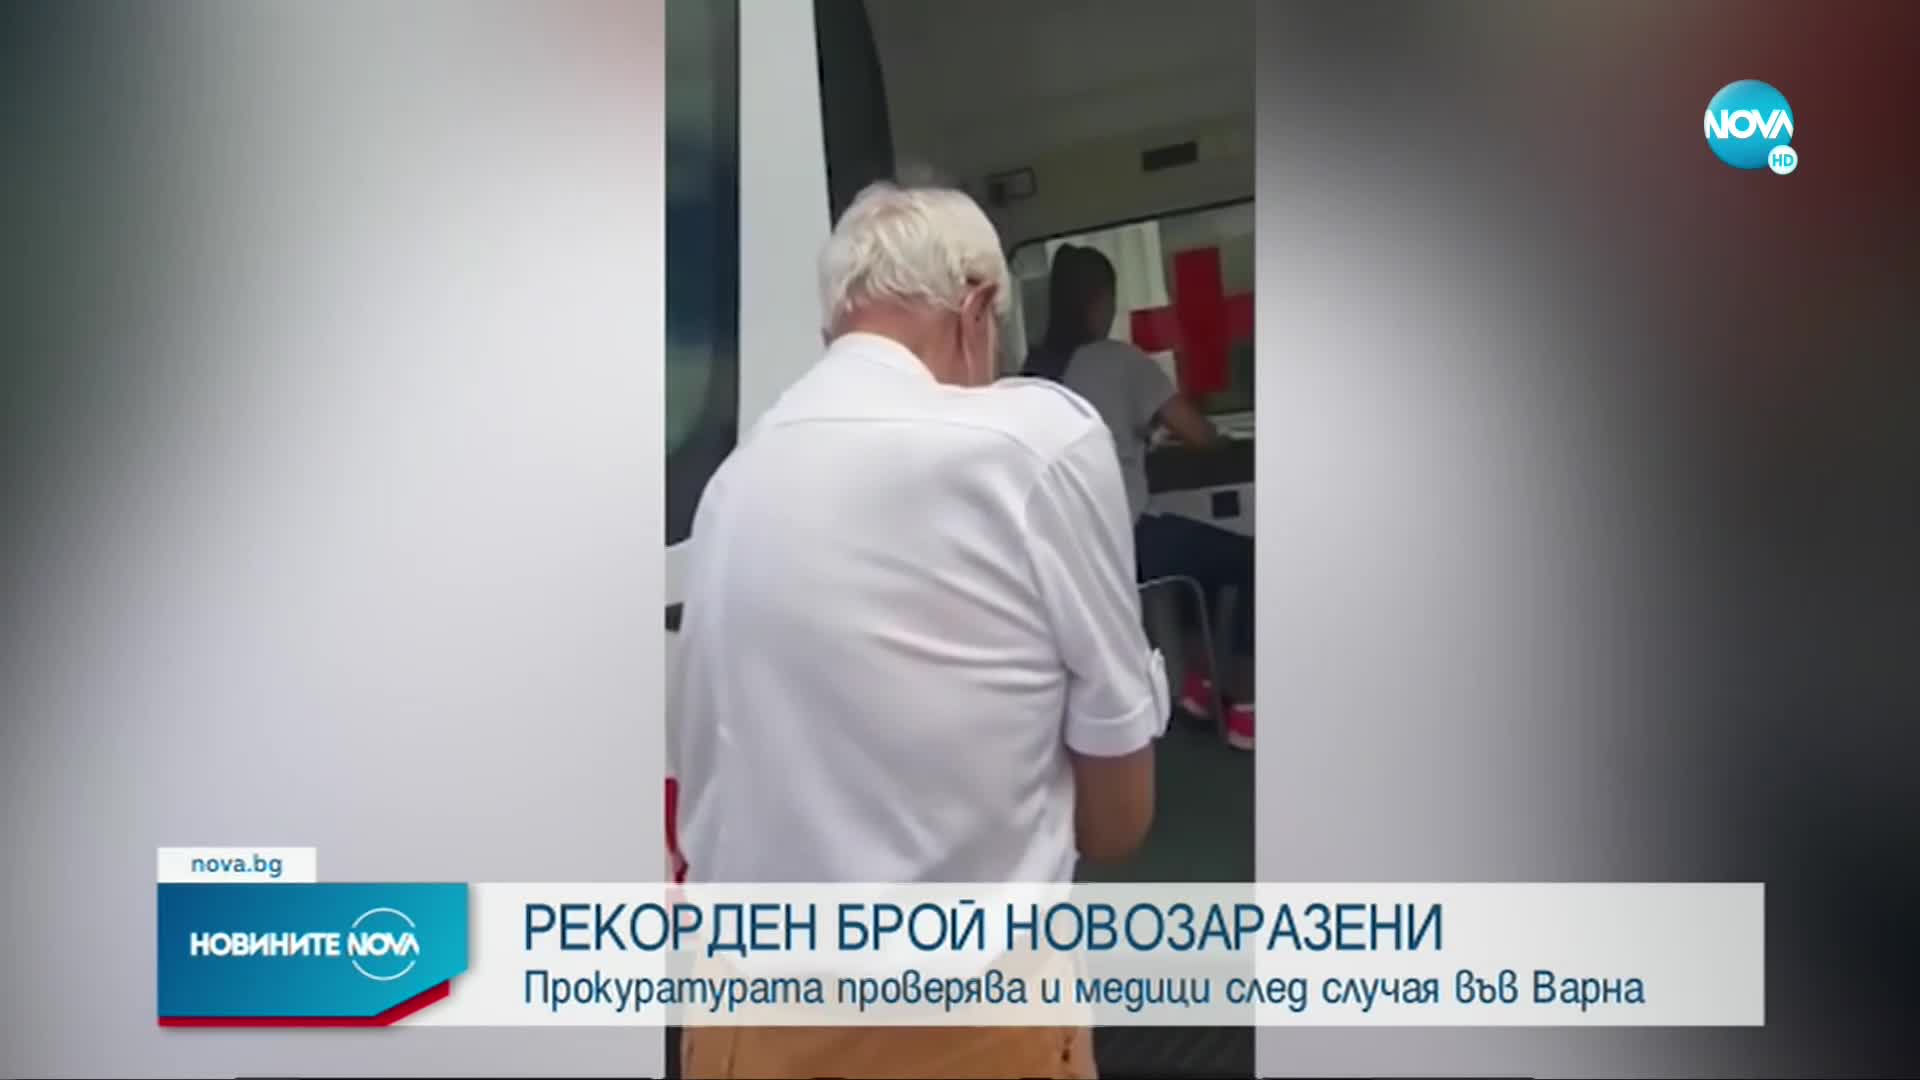 Прокуратурата проверява случая на вербална агресия срещу медици във Варна